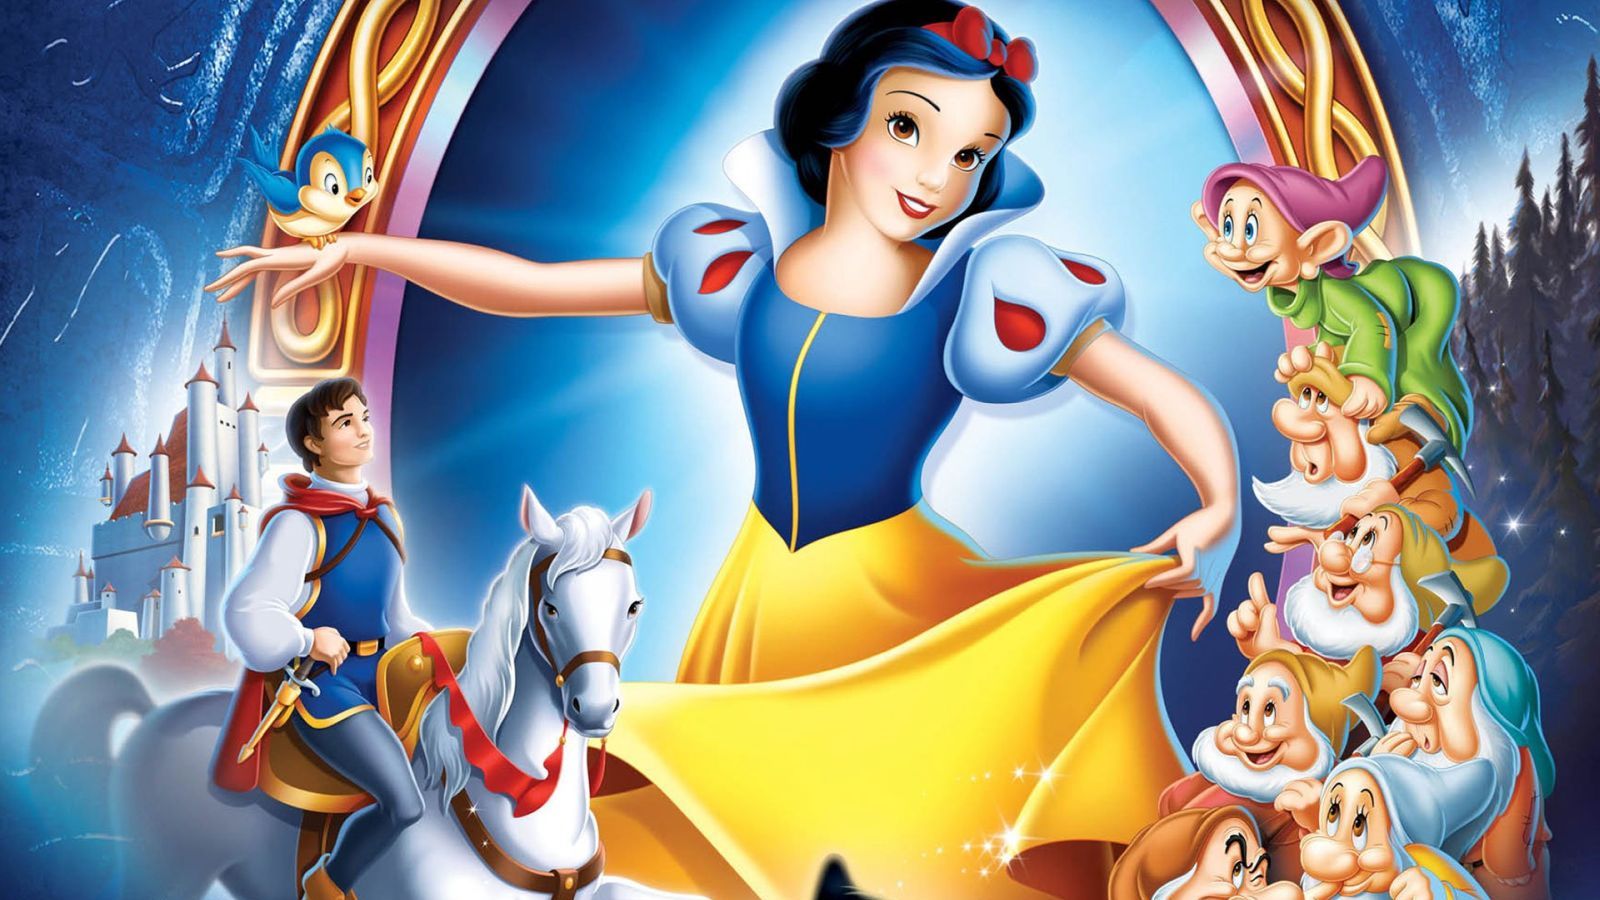 Biancaneve e i sette nani in 4K UHD, la recensione: il capolavoro Disney come non l'avete mai visto prima